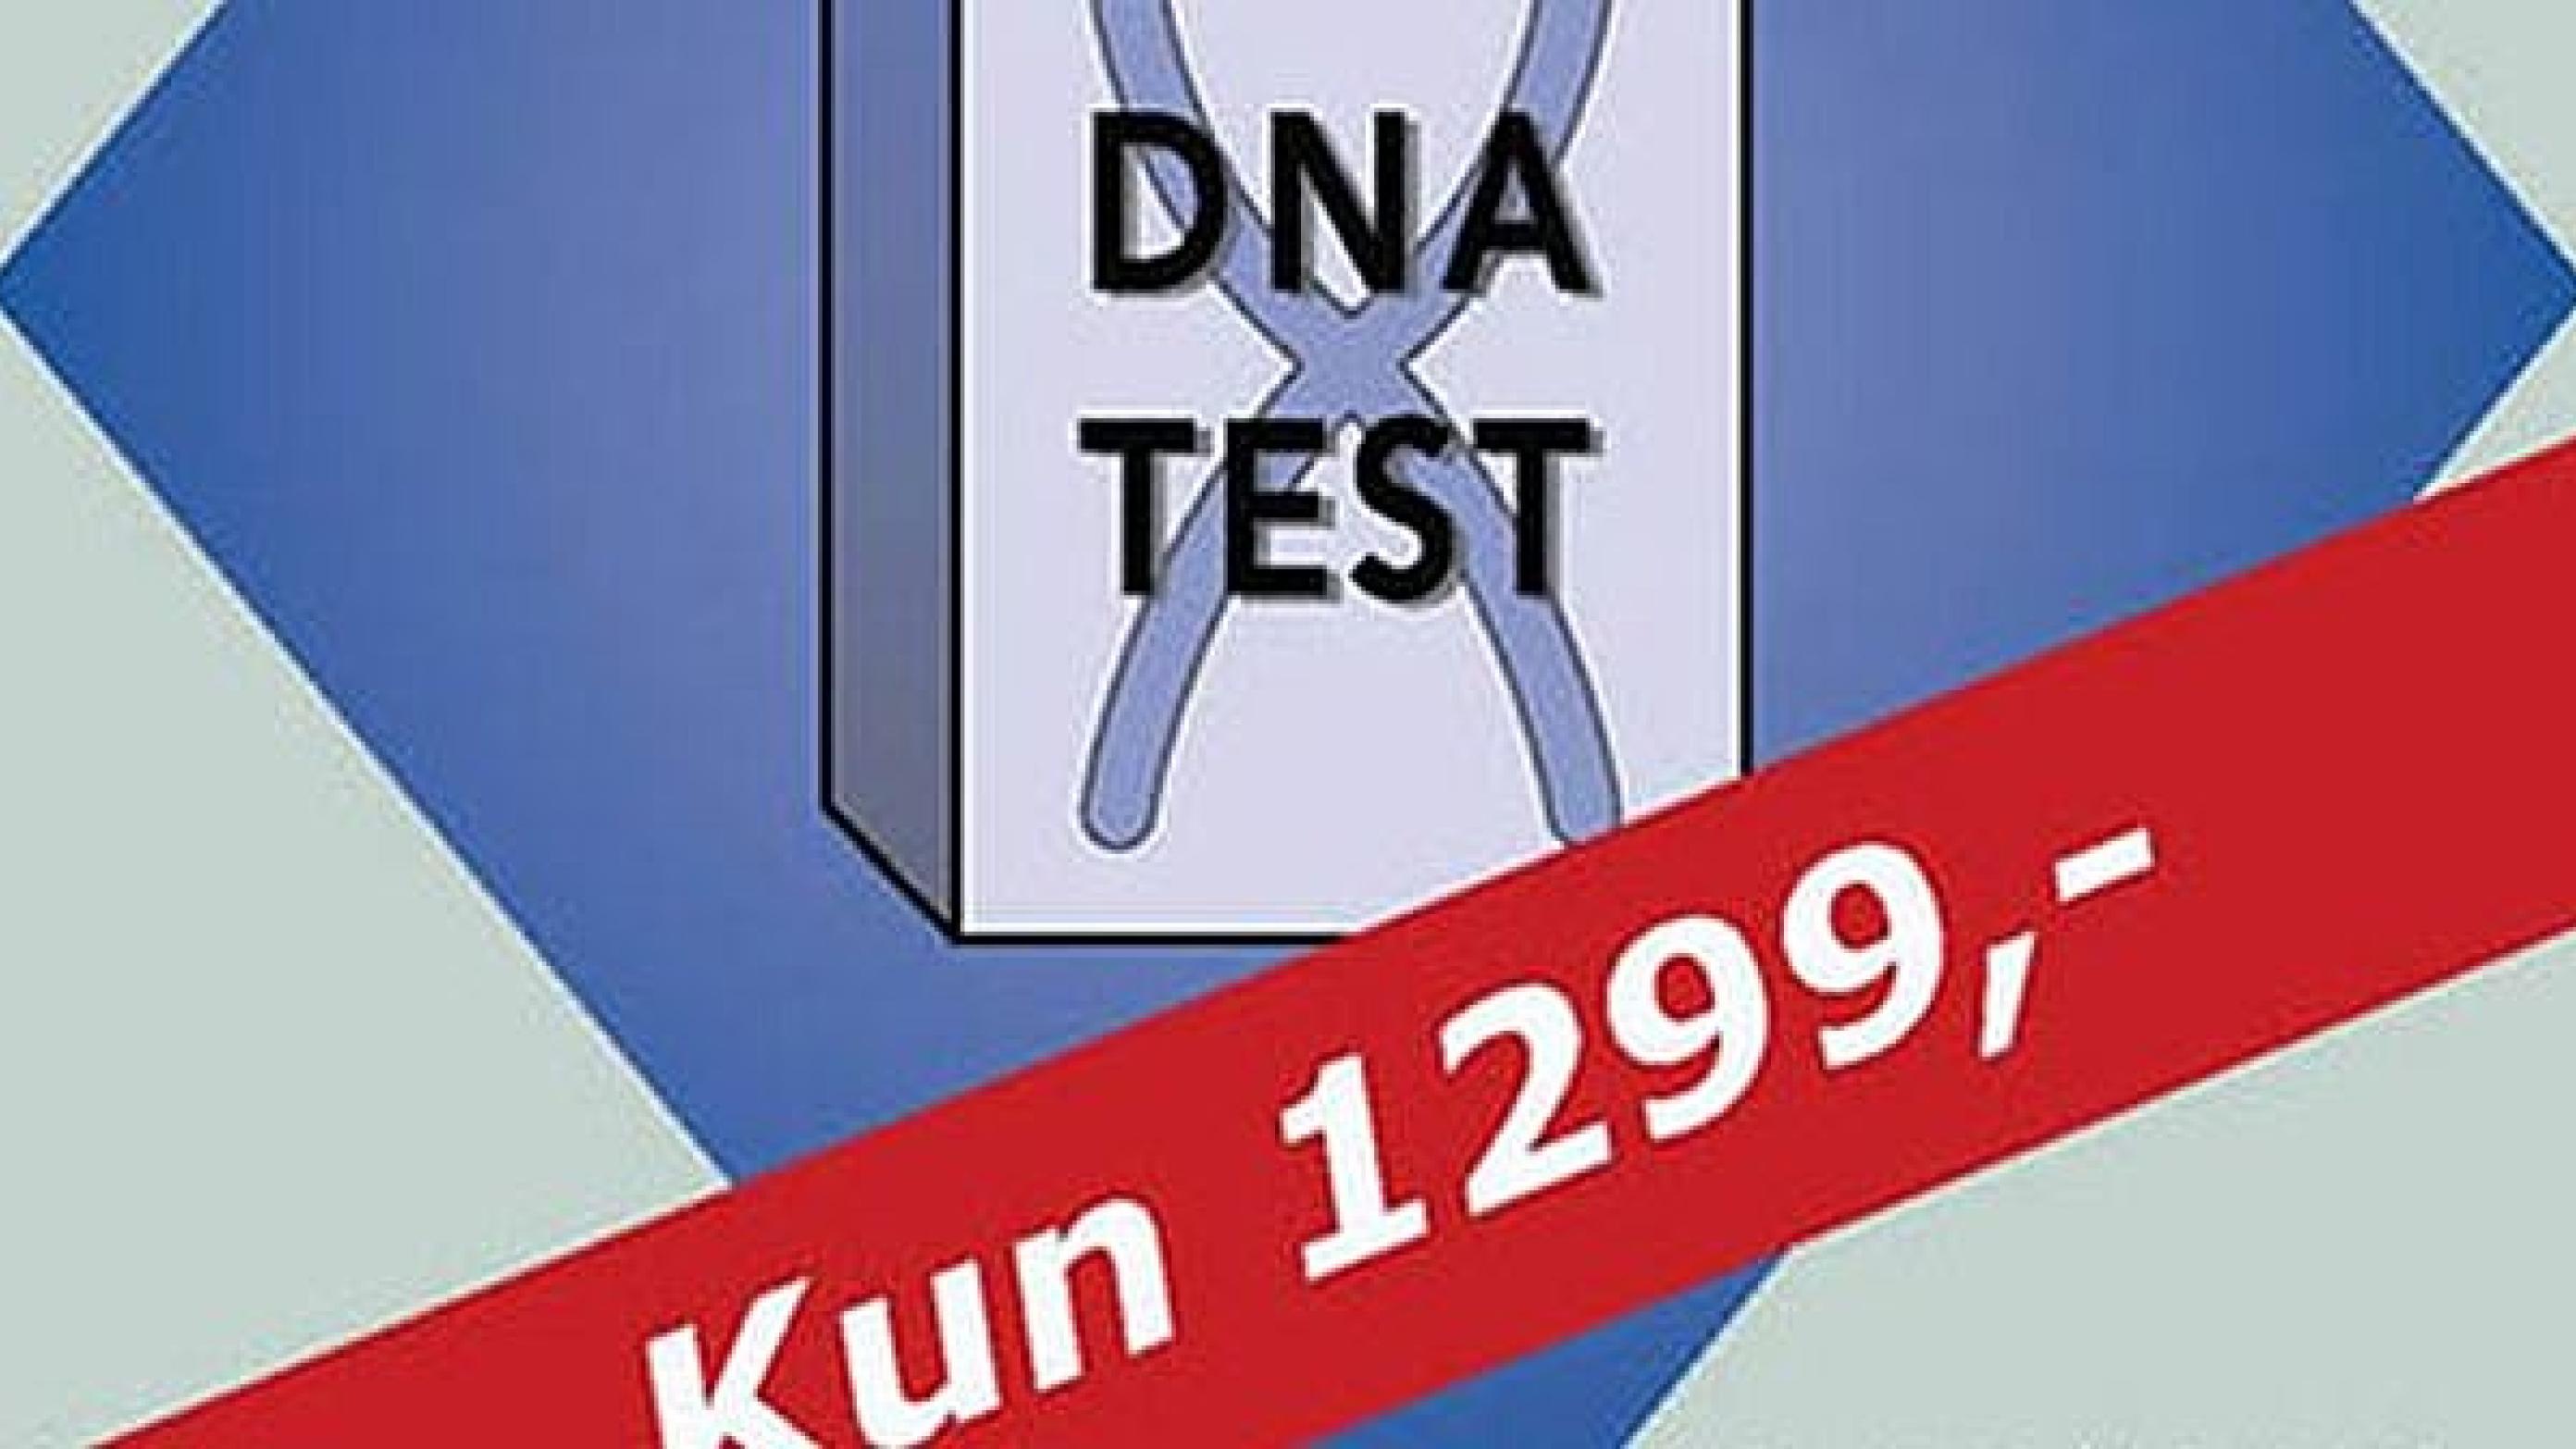 Det er i dag muligt at købe genetiske test via internettet, men kvaliteten af disse test og rådgivning af patienterne er ikke optimal.